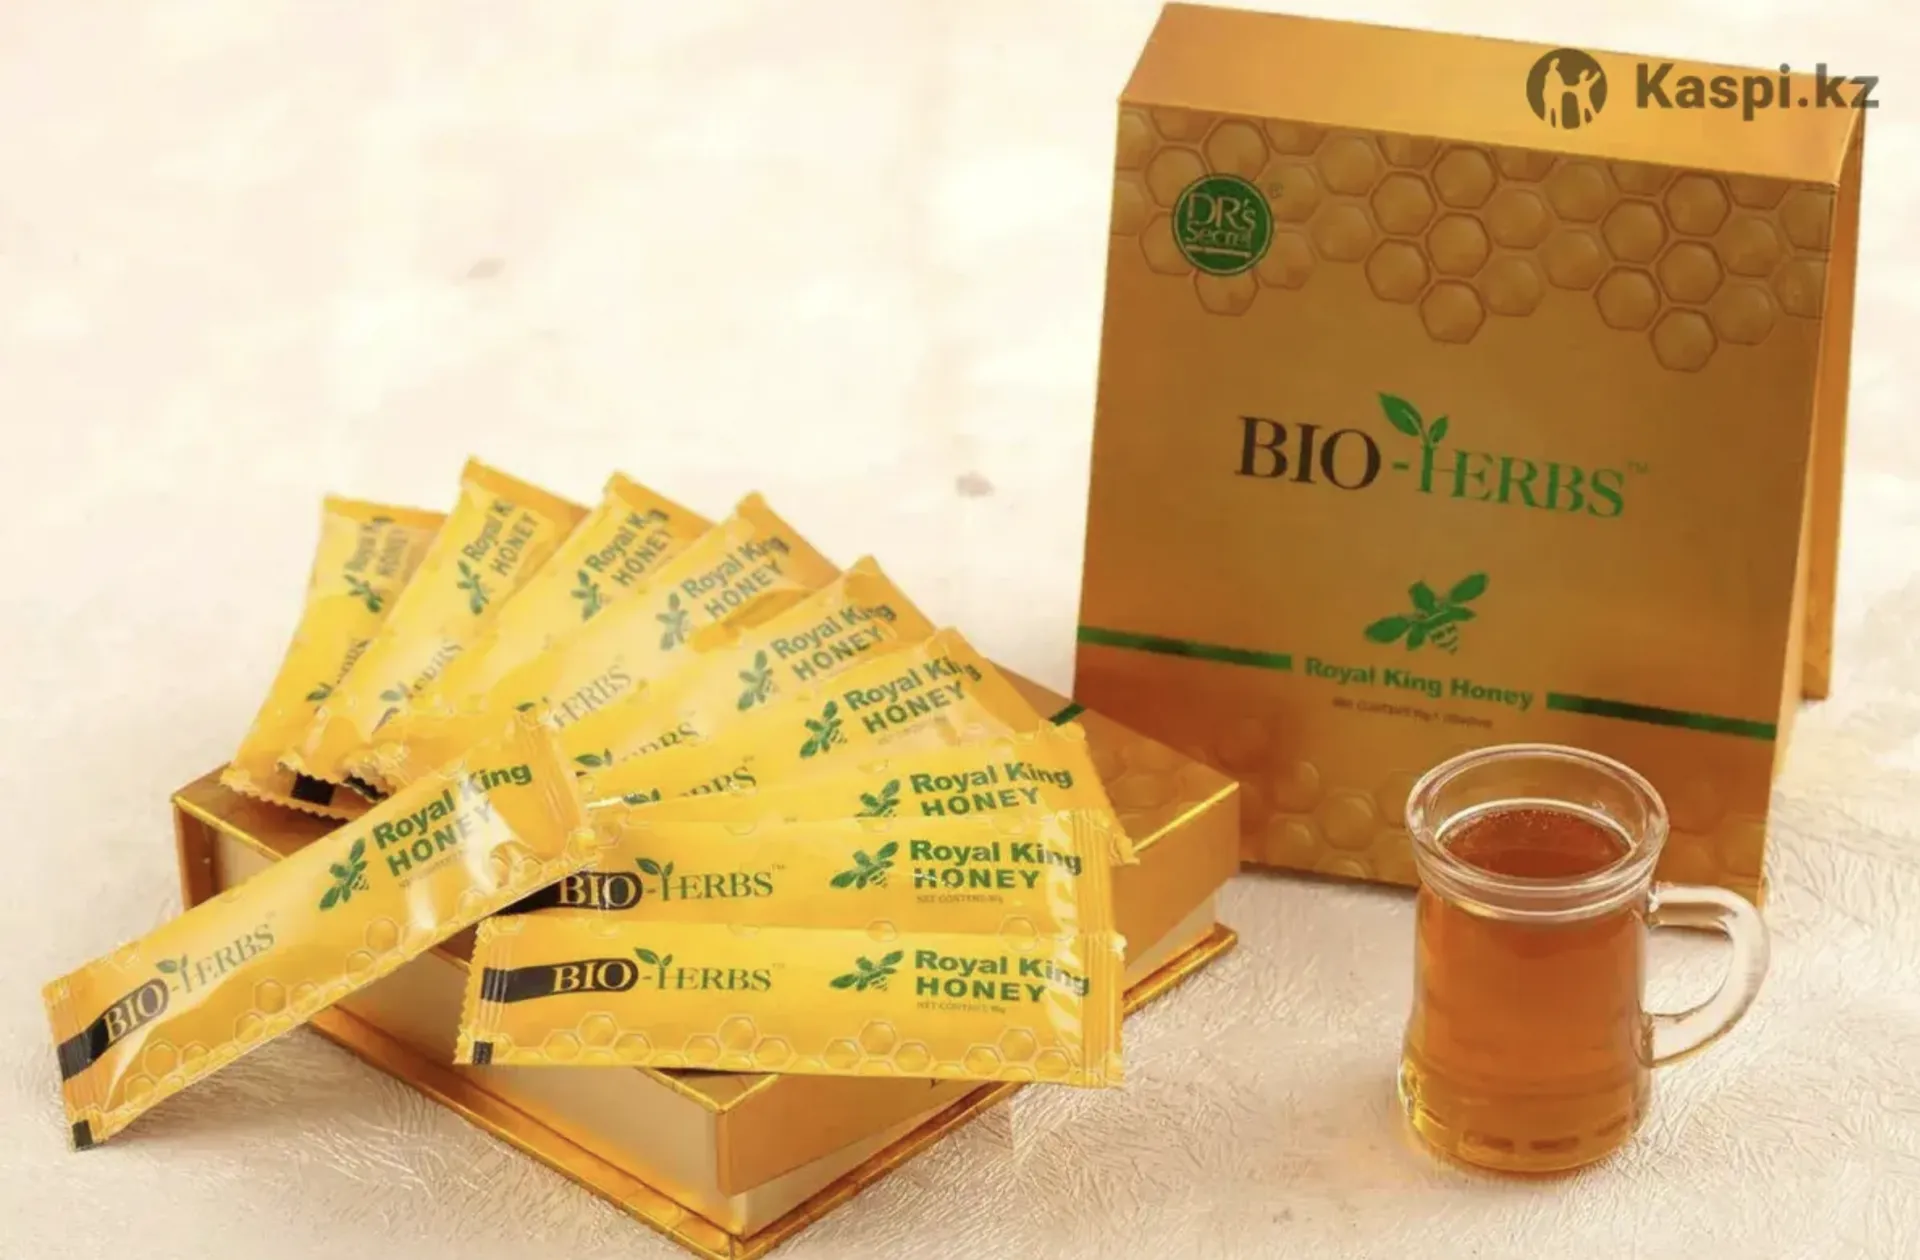 Bioherbs Royal King Honey Drs Secret erkaklar salomatligi uchun Qirollik asal (300g, Malayziya)#2